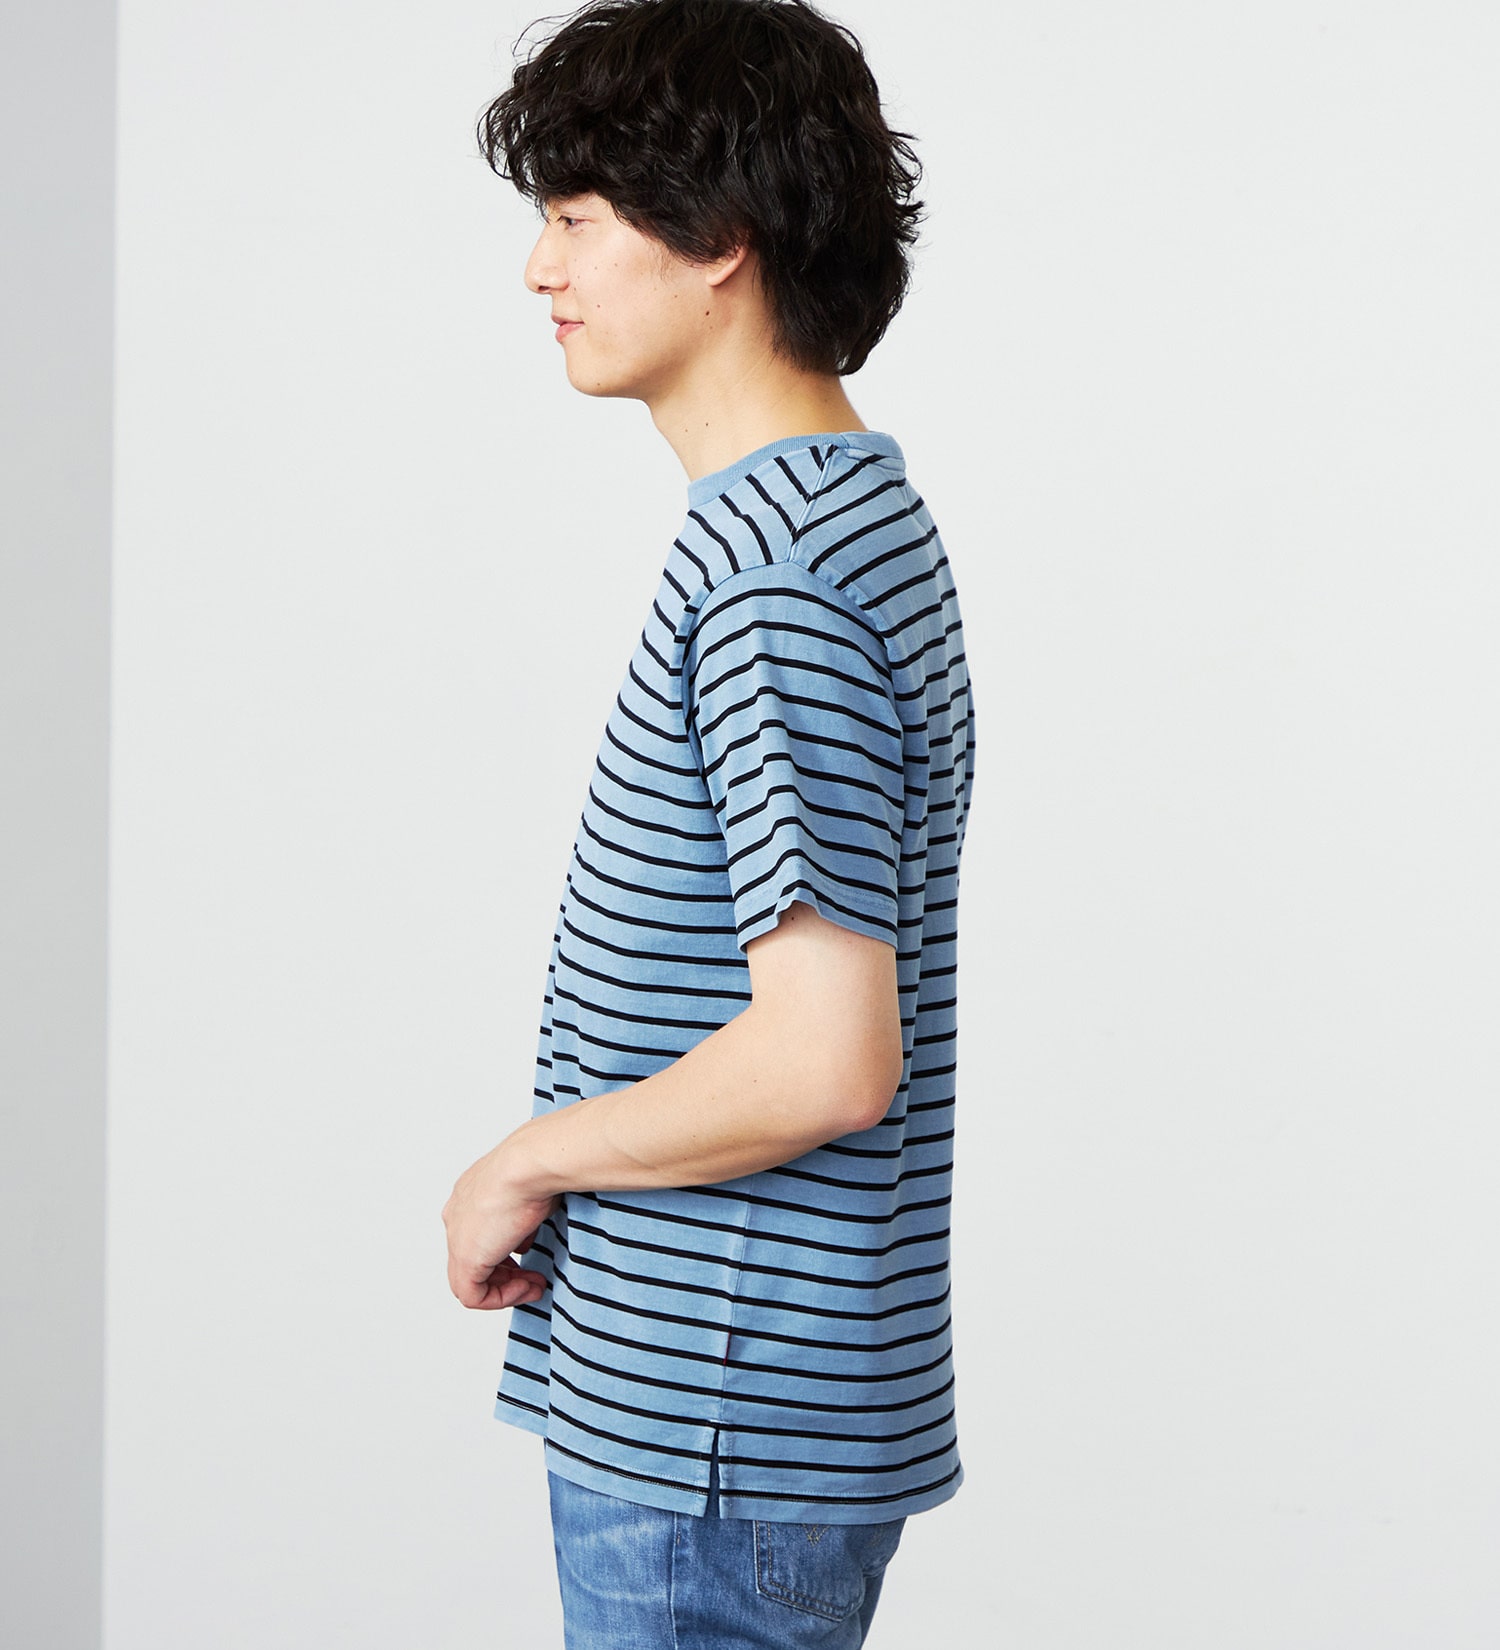 EDWIN(エドウイン)のピグメント加工ボーダーTシャツ|トップス/Tシャツ/カットソー/メンズ|ブルー